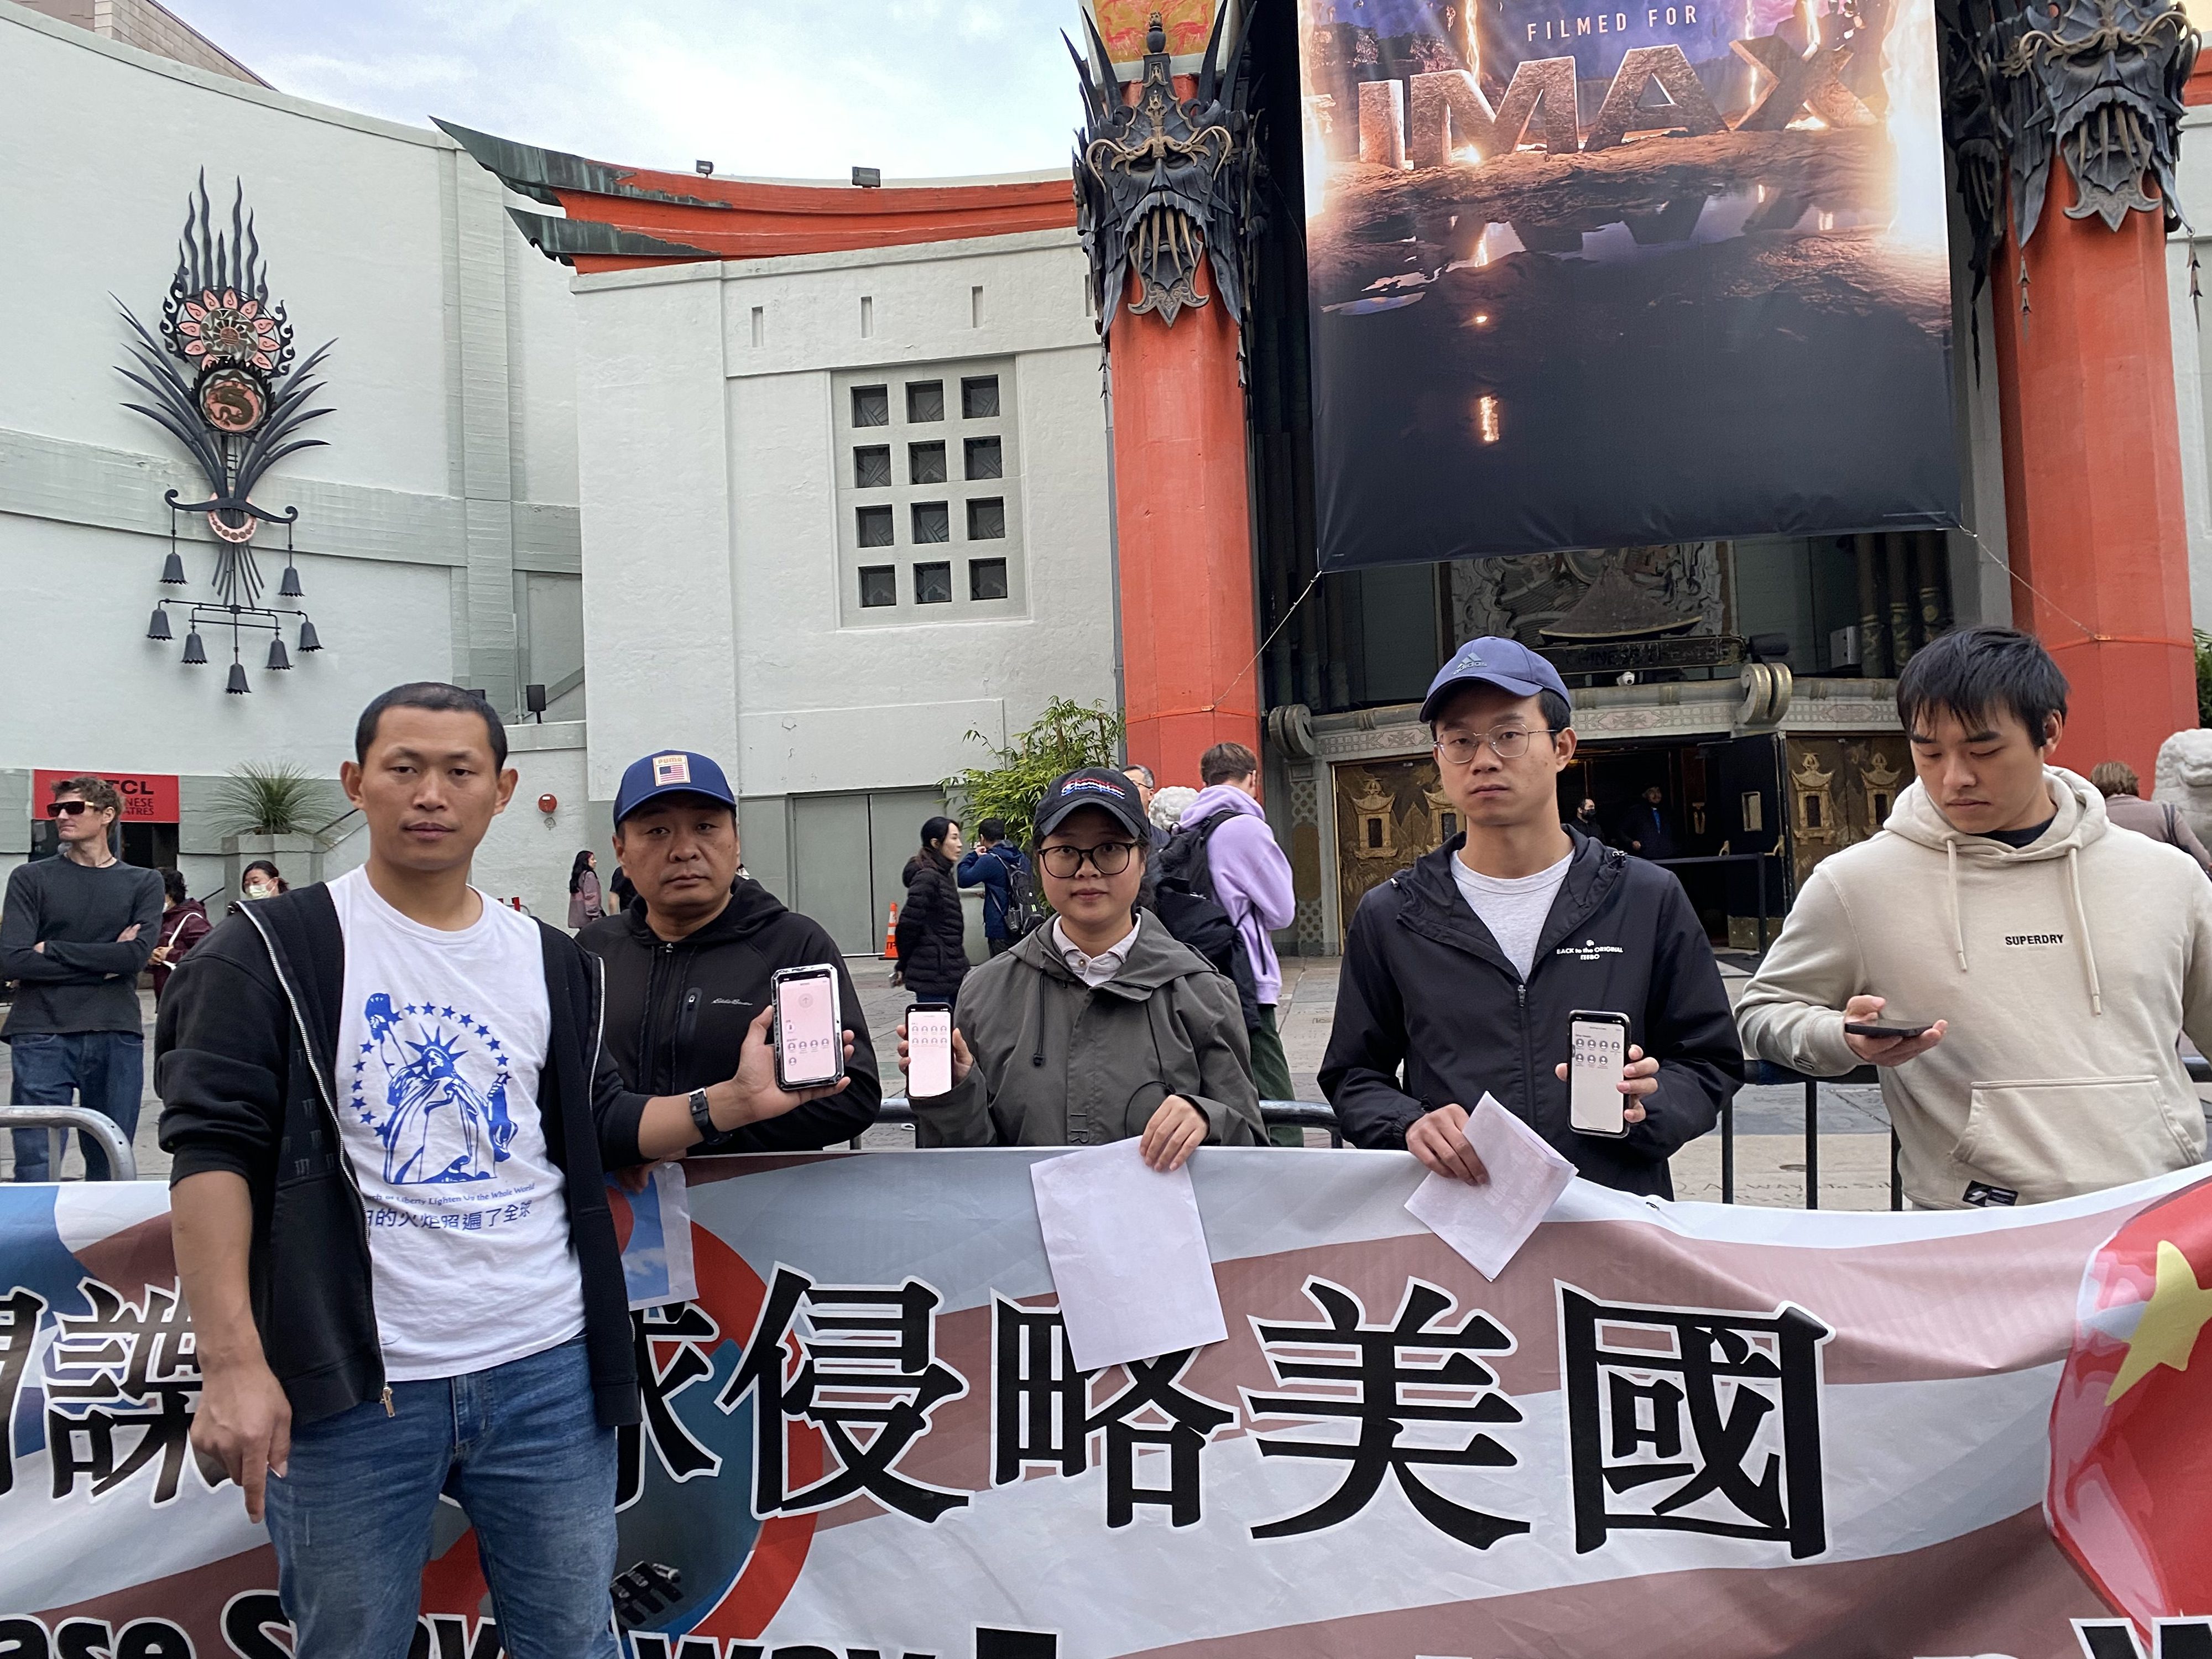 華人好萊塢集會 抗議中共間諜氣球入侵美國